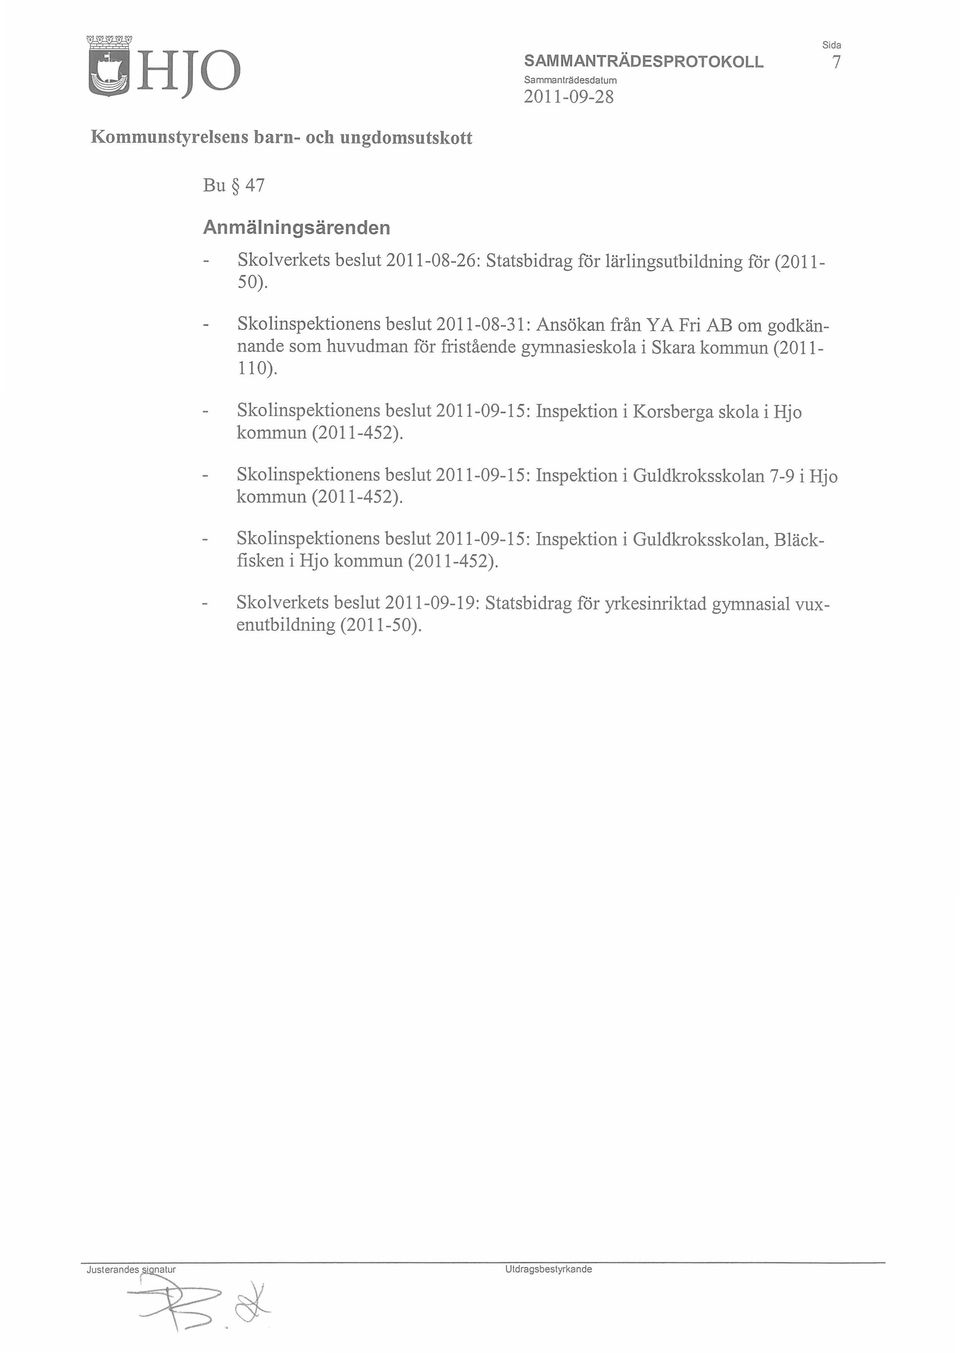 Skolinspektionens beslut 2011-09-15: Inspektion i Korsberga skola i Hjo kommun (2011-452).